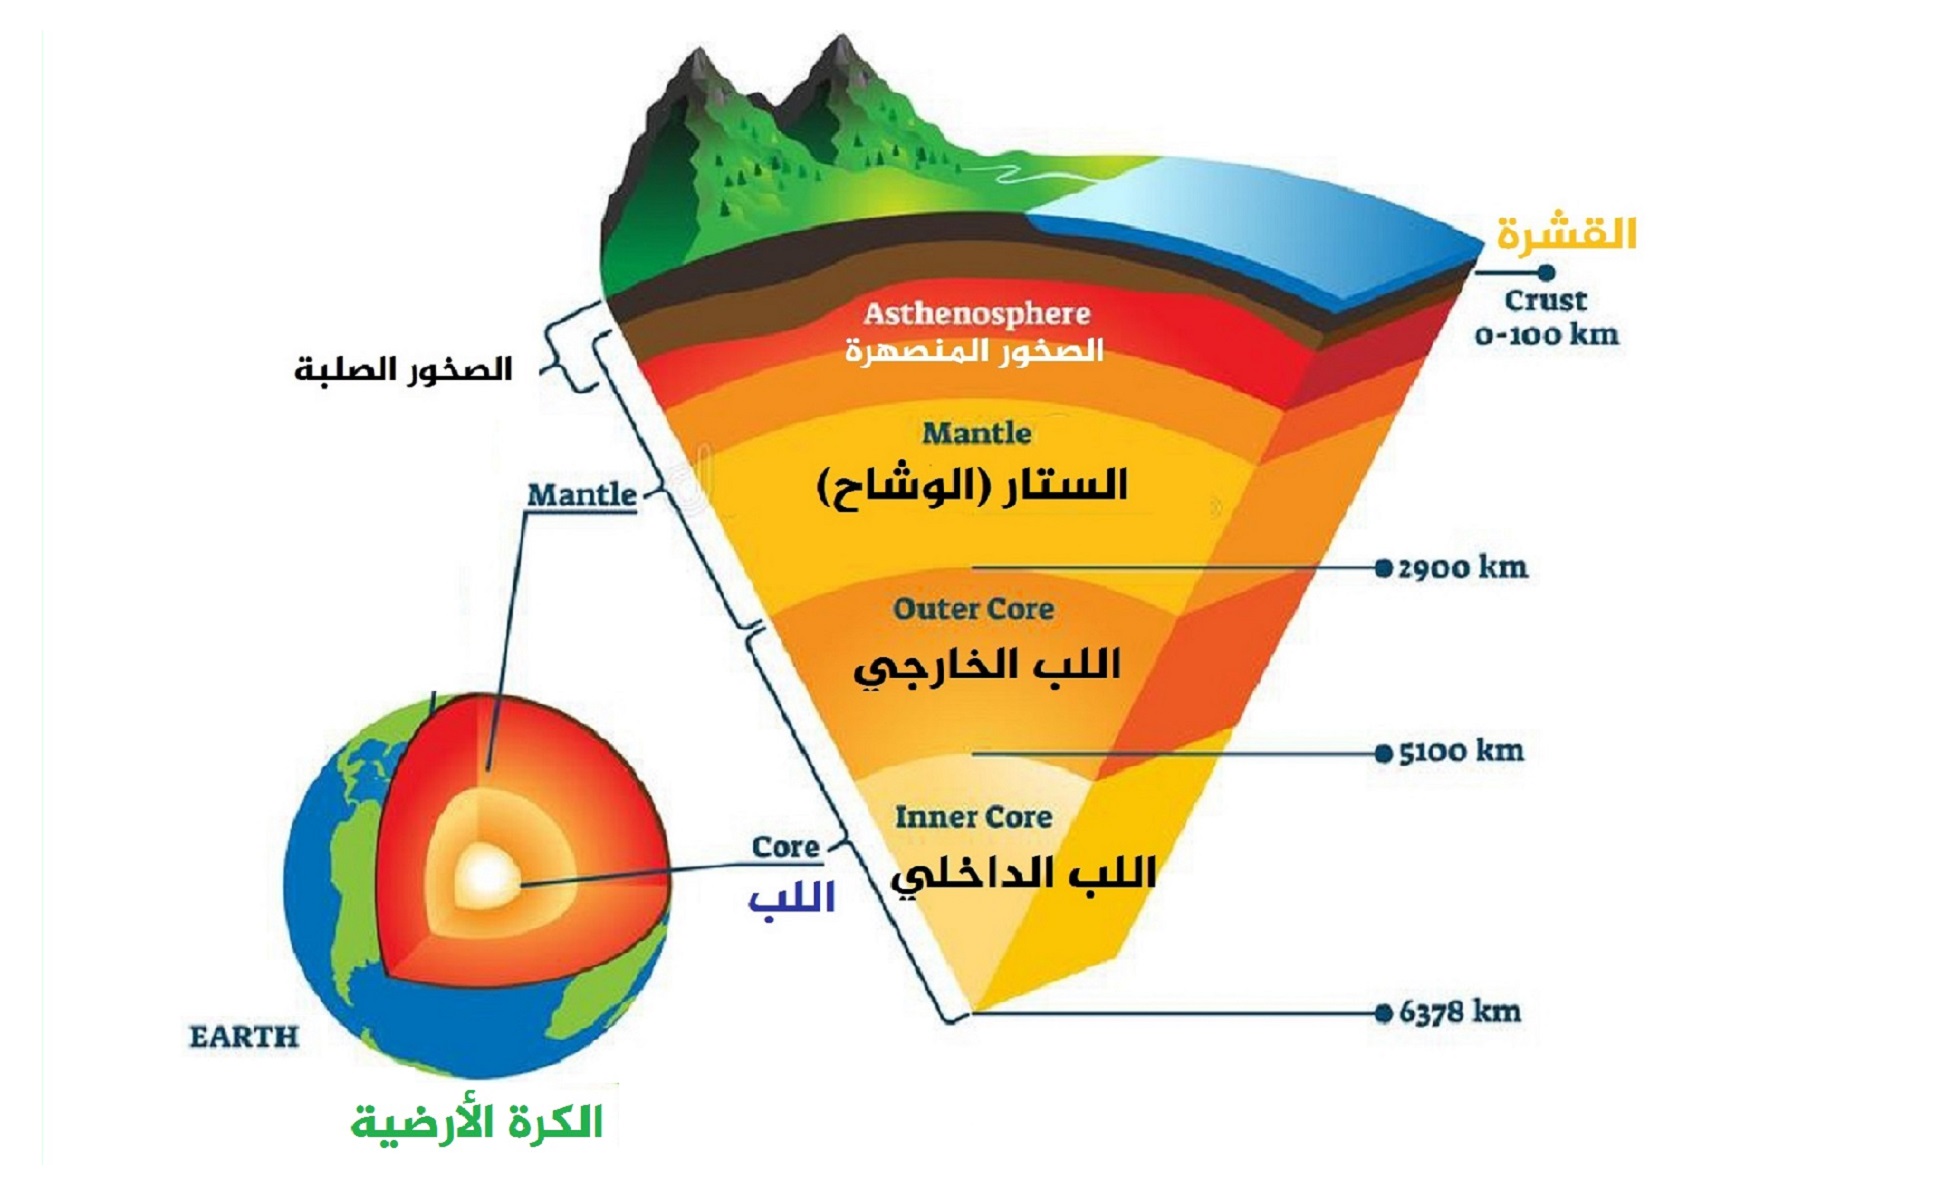 يوضح الرسم أدناه الطبقات الجيولوجية لصخور تحتوي على أحافير